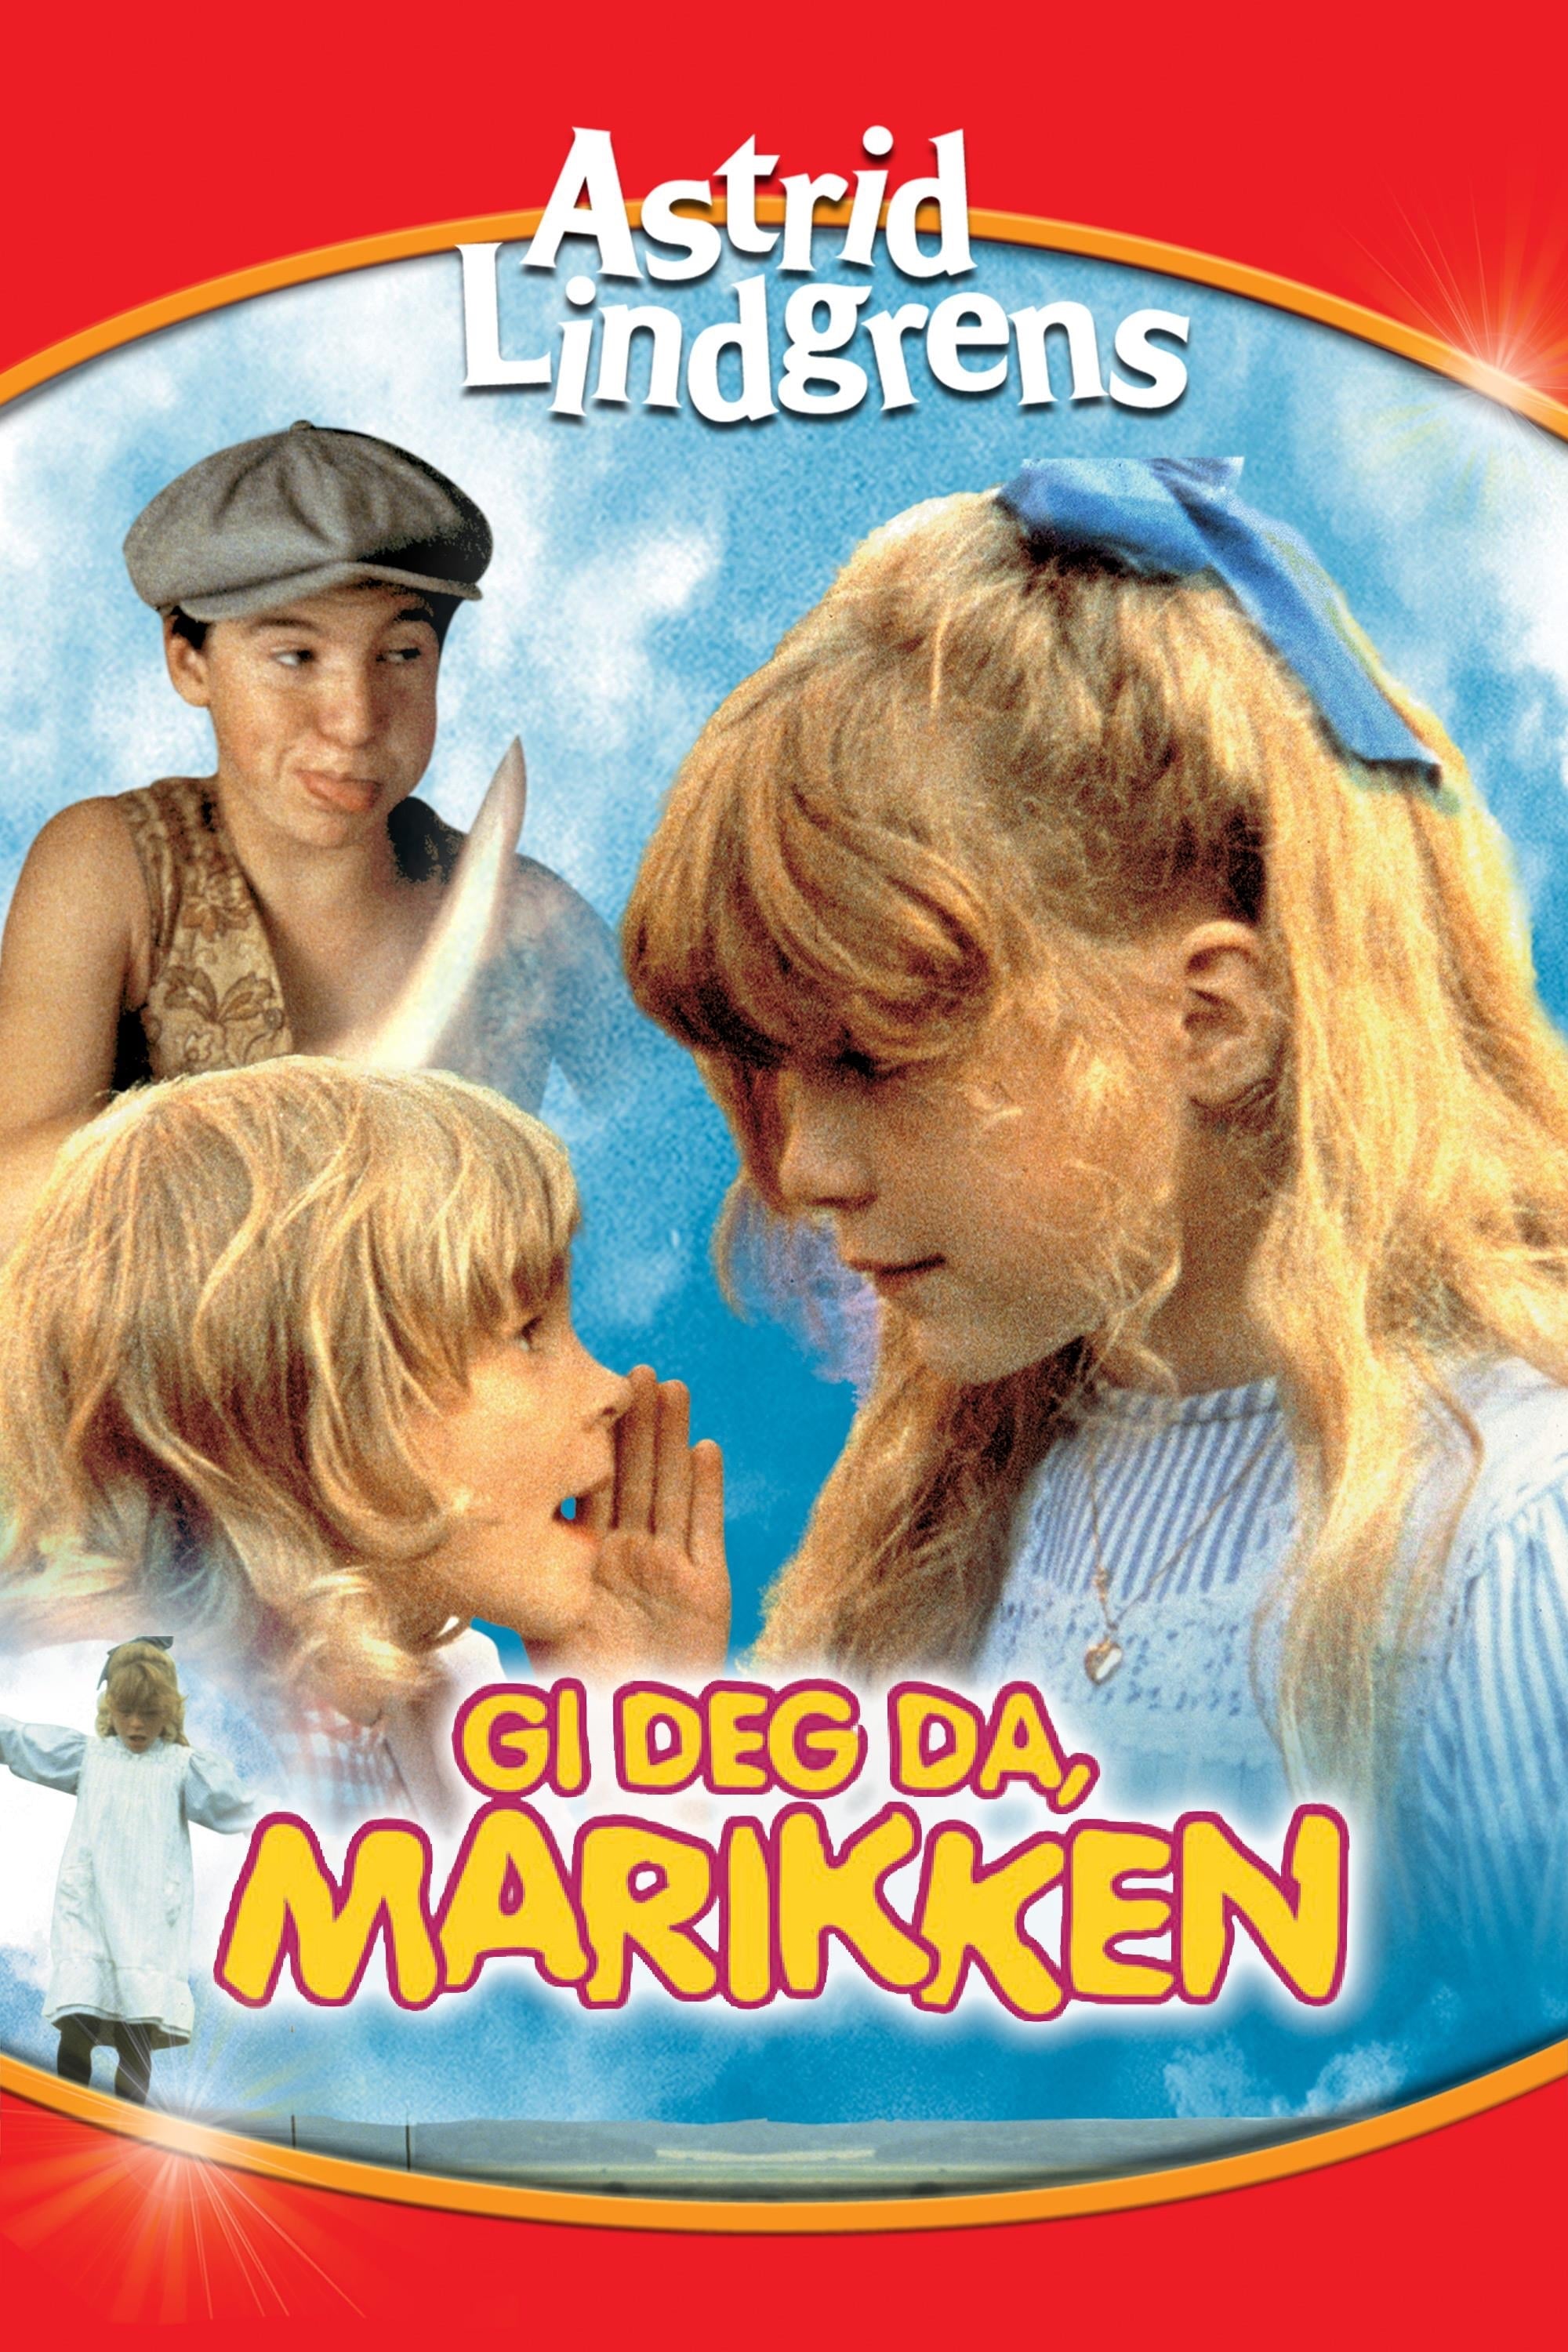 Du är inte klok, Madicken (1979) - Filmer - Film . nu